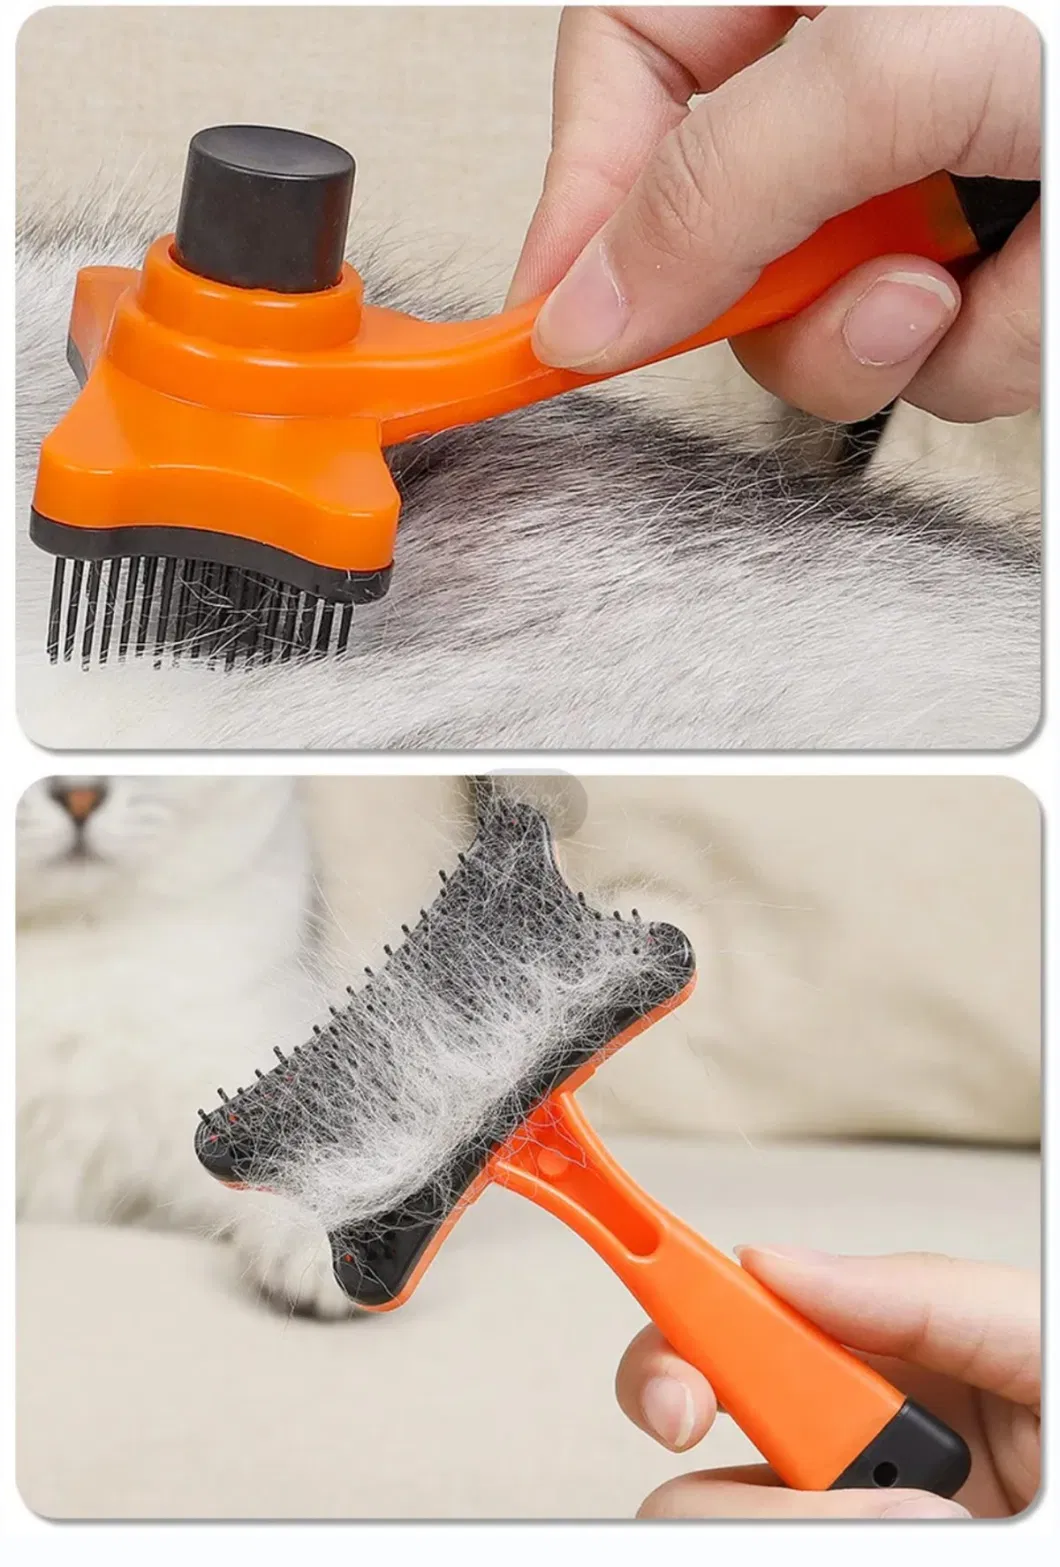 New Design ABS Plastic Pet Deshedding Brush Cat Dog Bath Tool Brush Grooming Brush